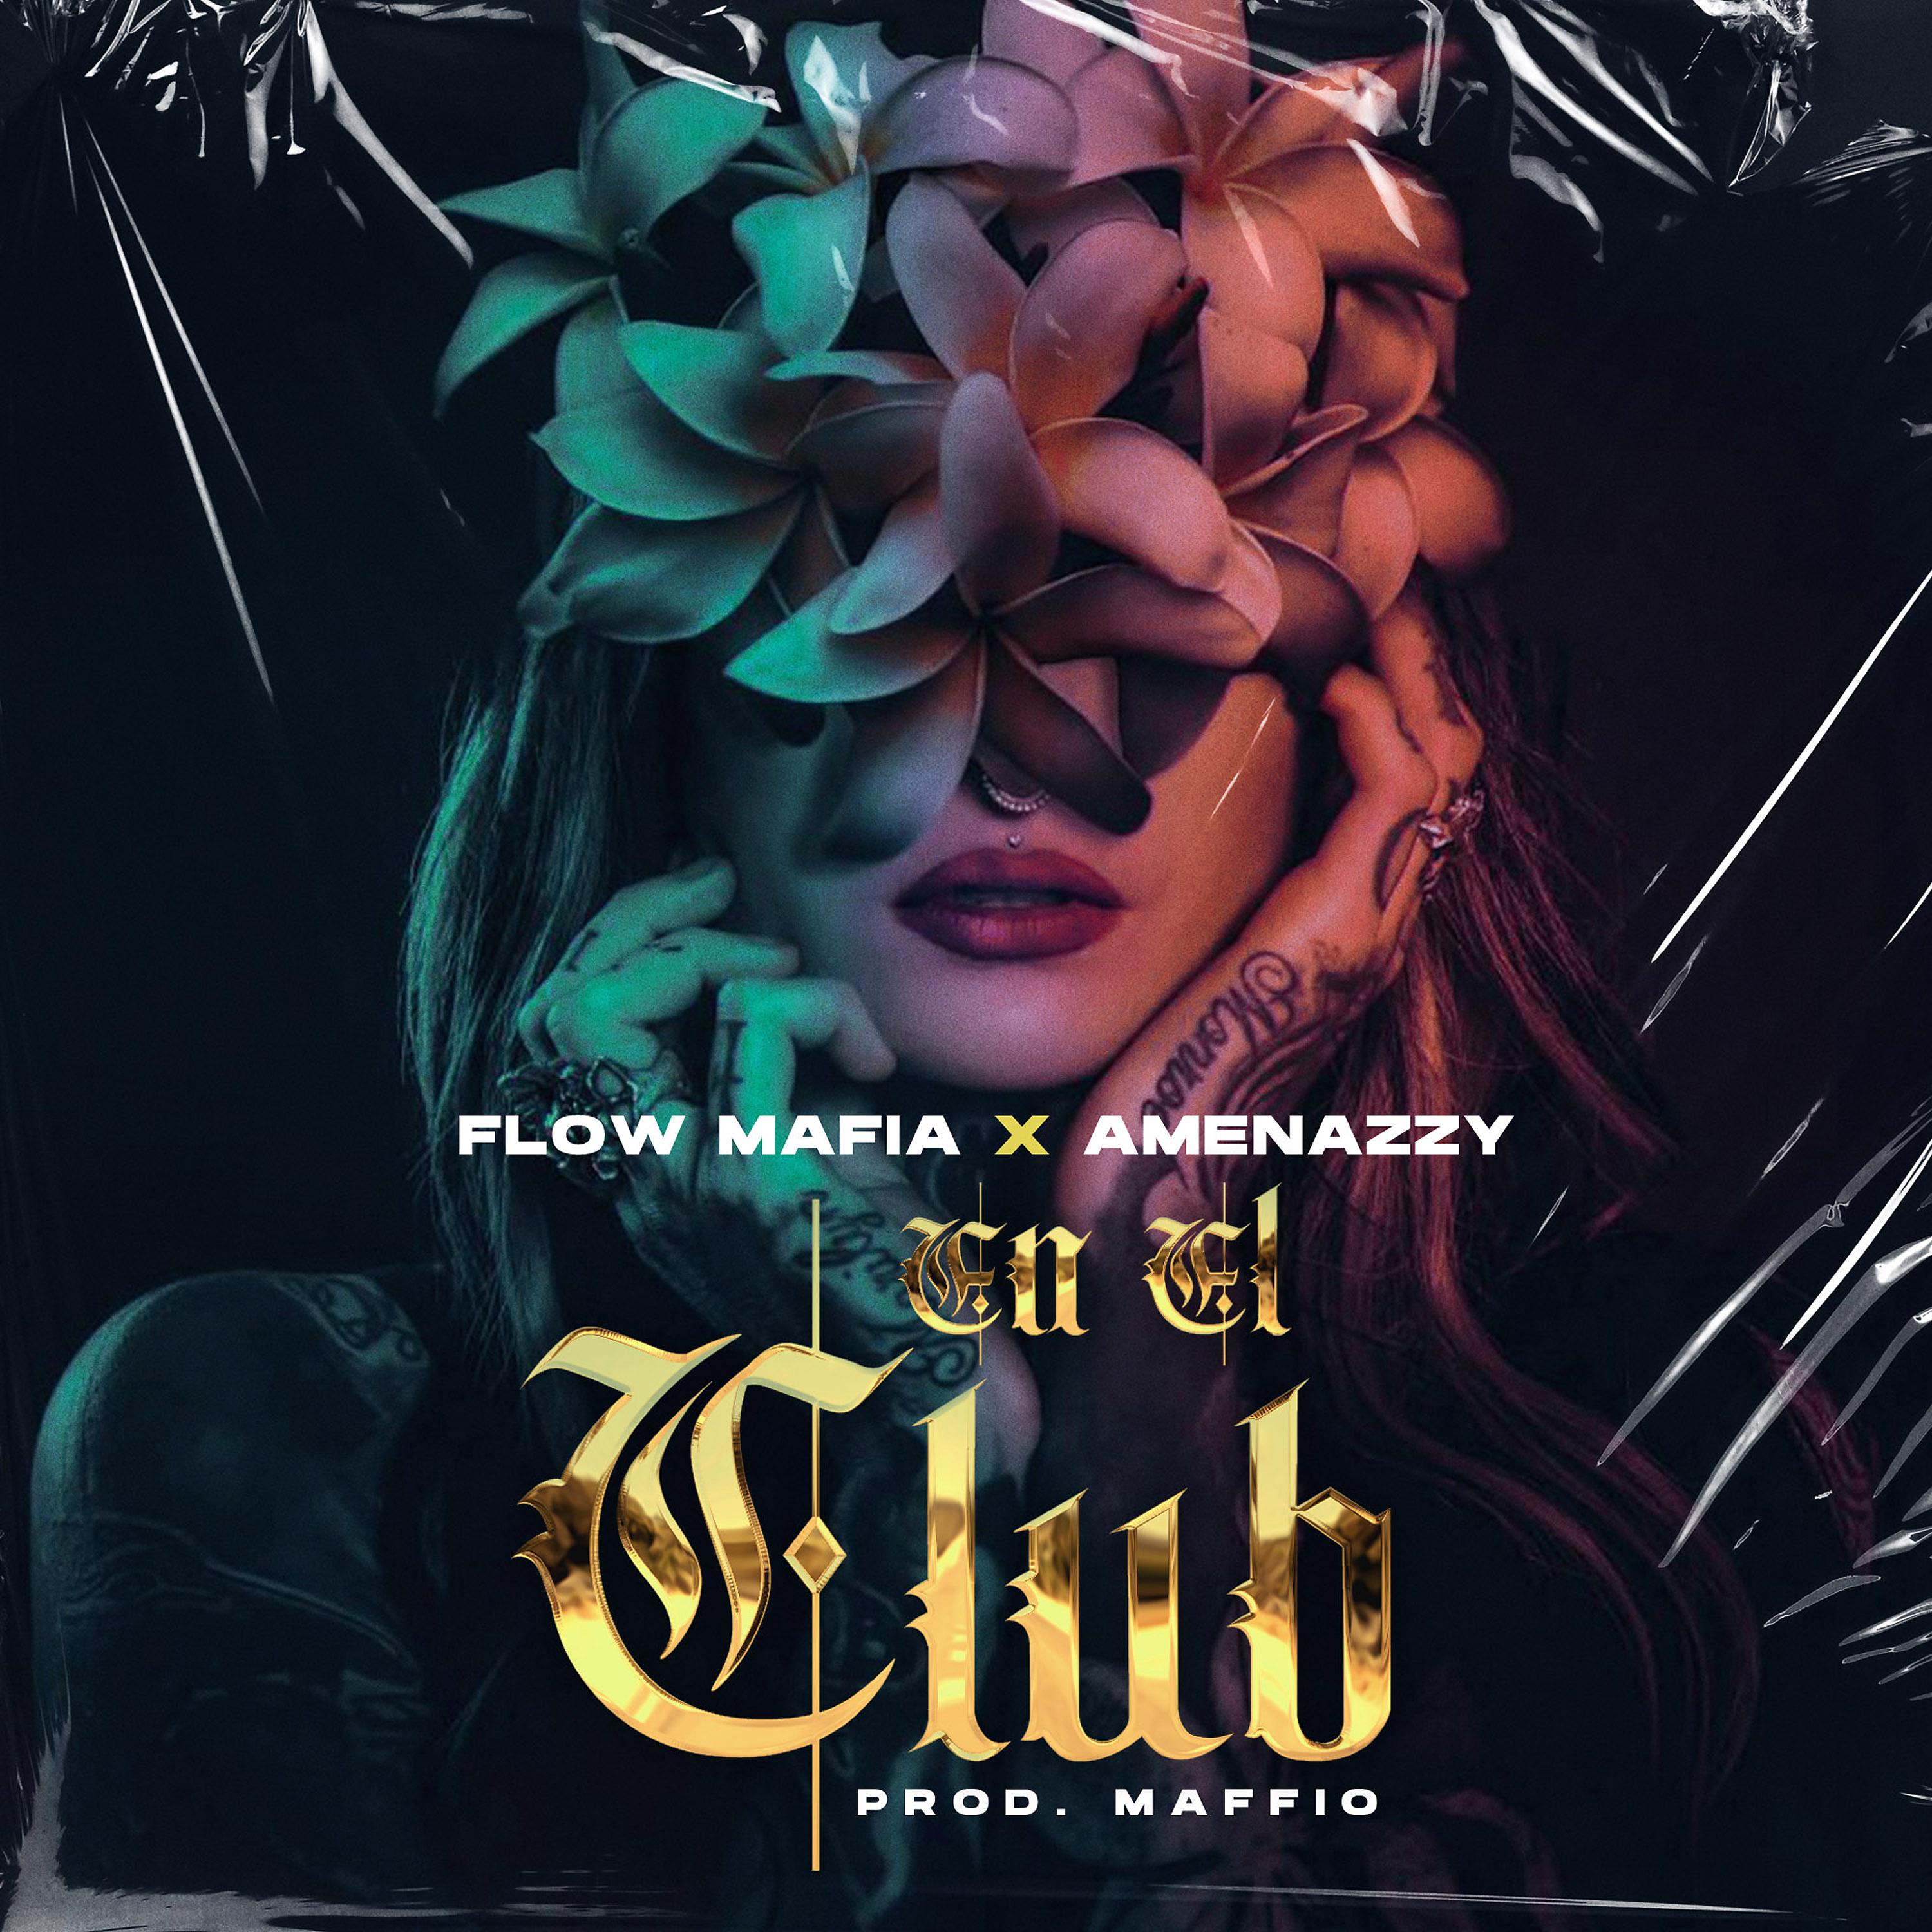 Постер альбома En el Club